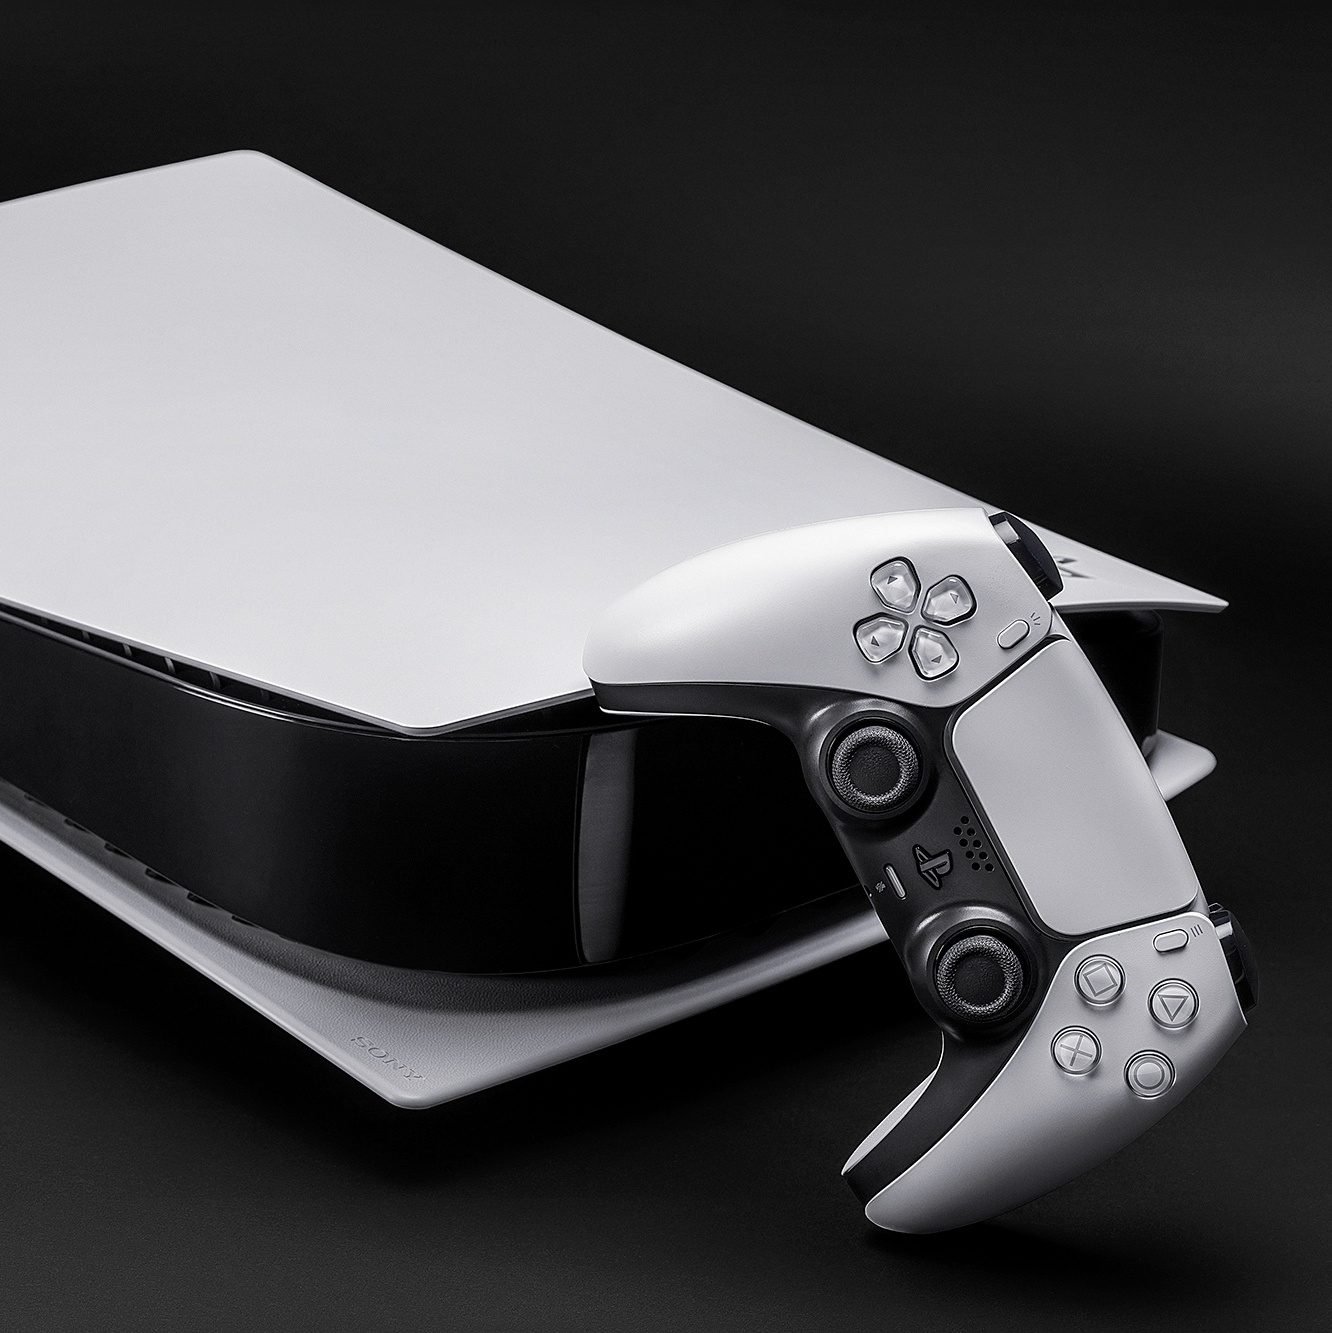 Sony estaria com problemas quanto ao preço do PS5 frente ao Xbox